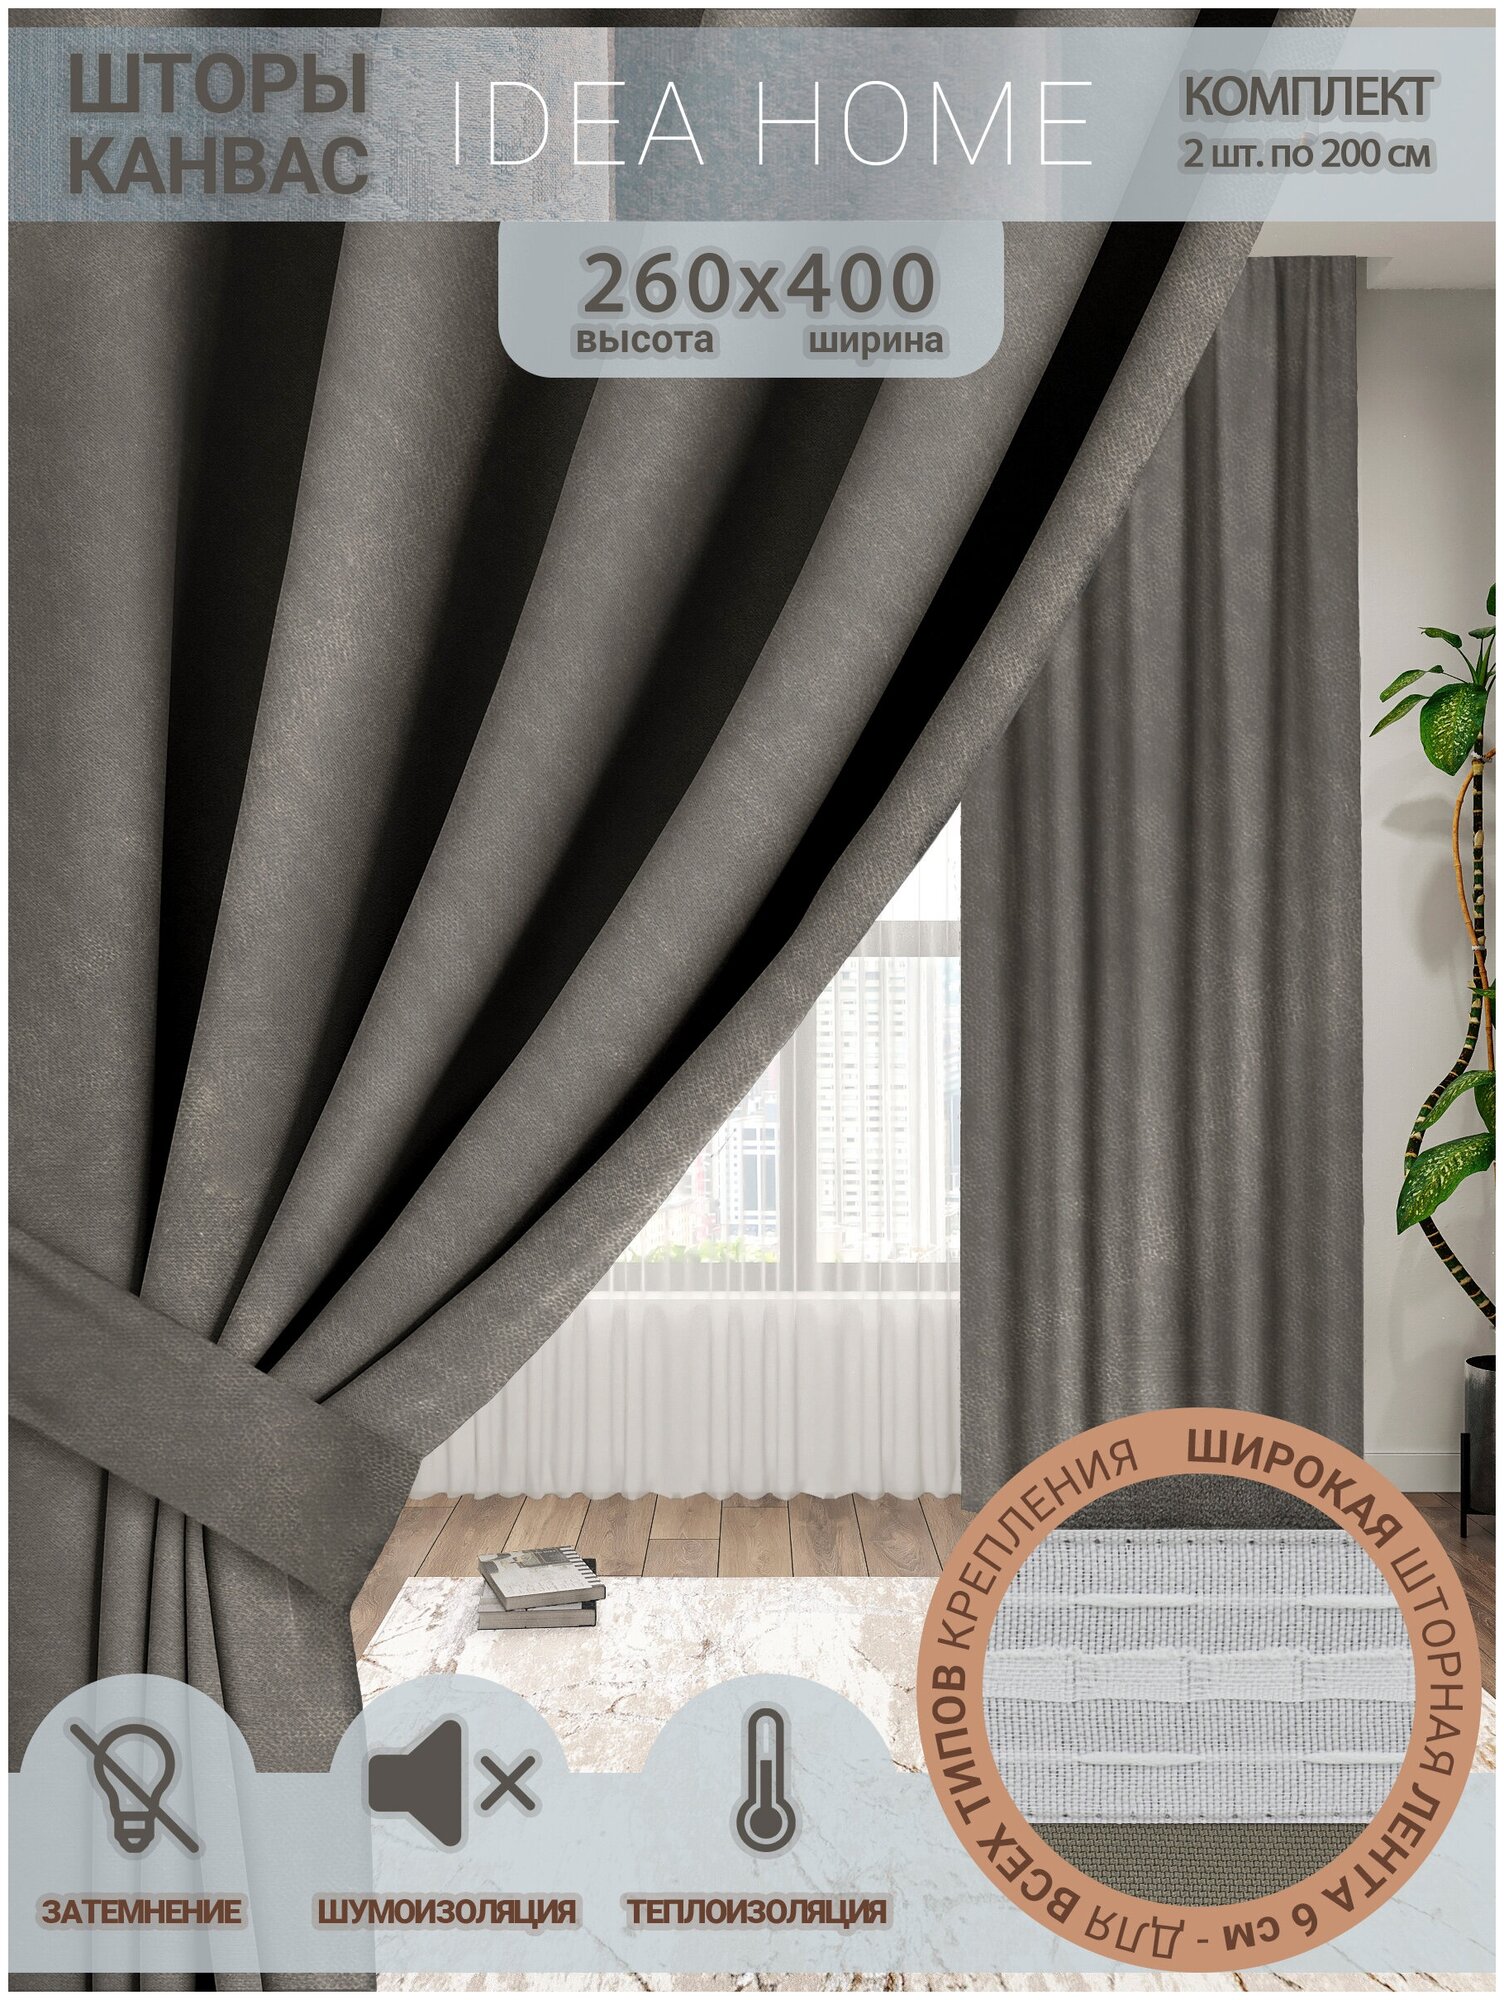 Комплект штор канвас / IDEA HOME / светозащитные шторы для комнаты, кухни, спальни, гостиной и дачи